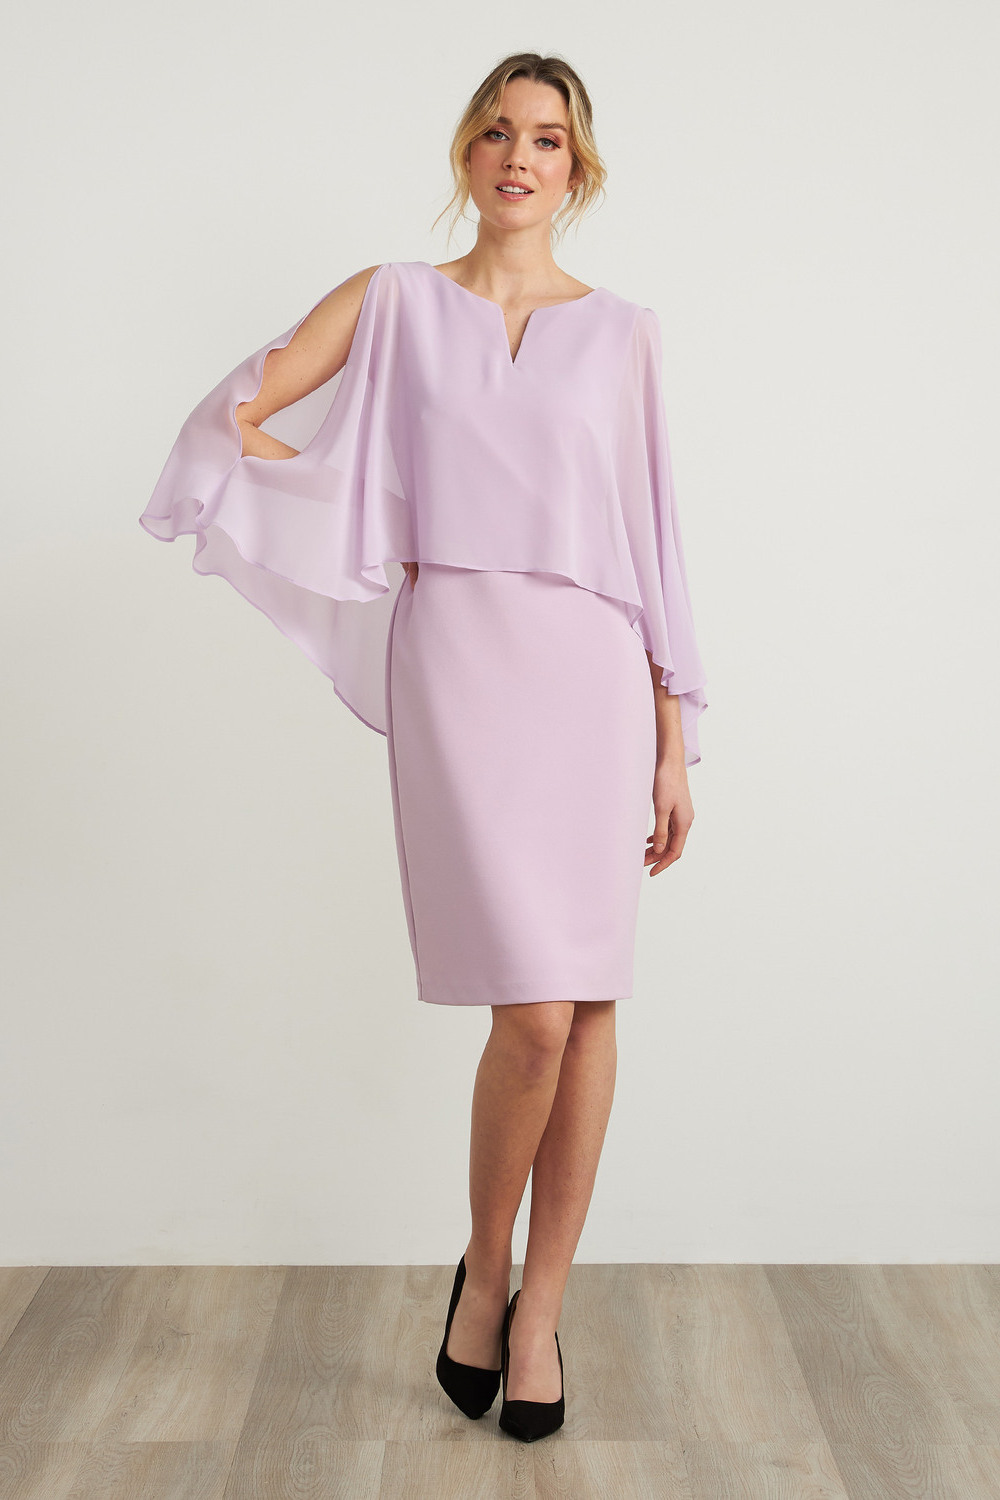 Joseph Ribkoff Chiffon Overlay Dress Style 212158. Sweet Lilac